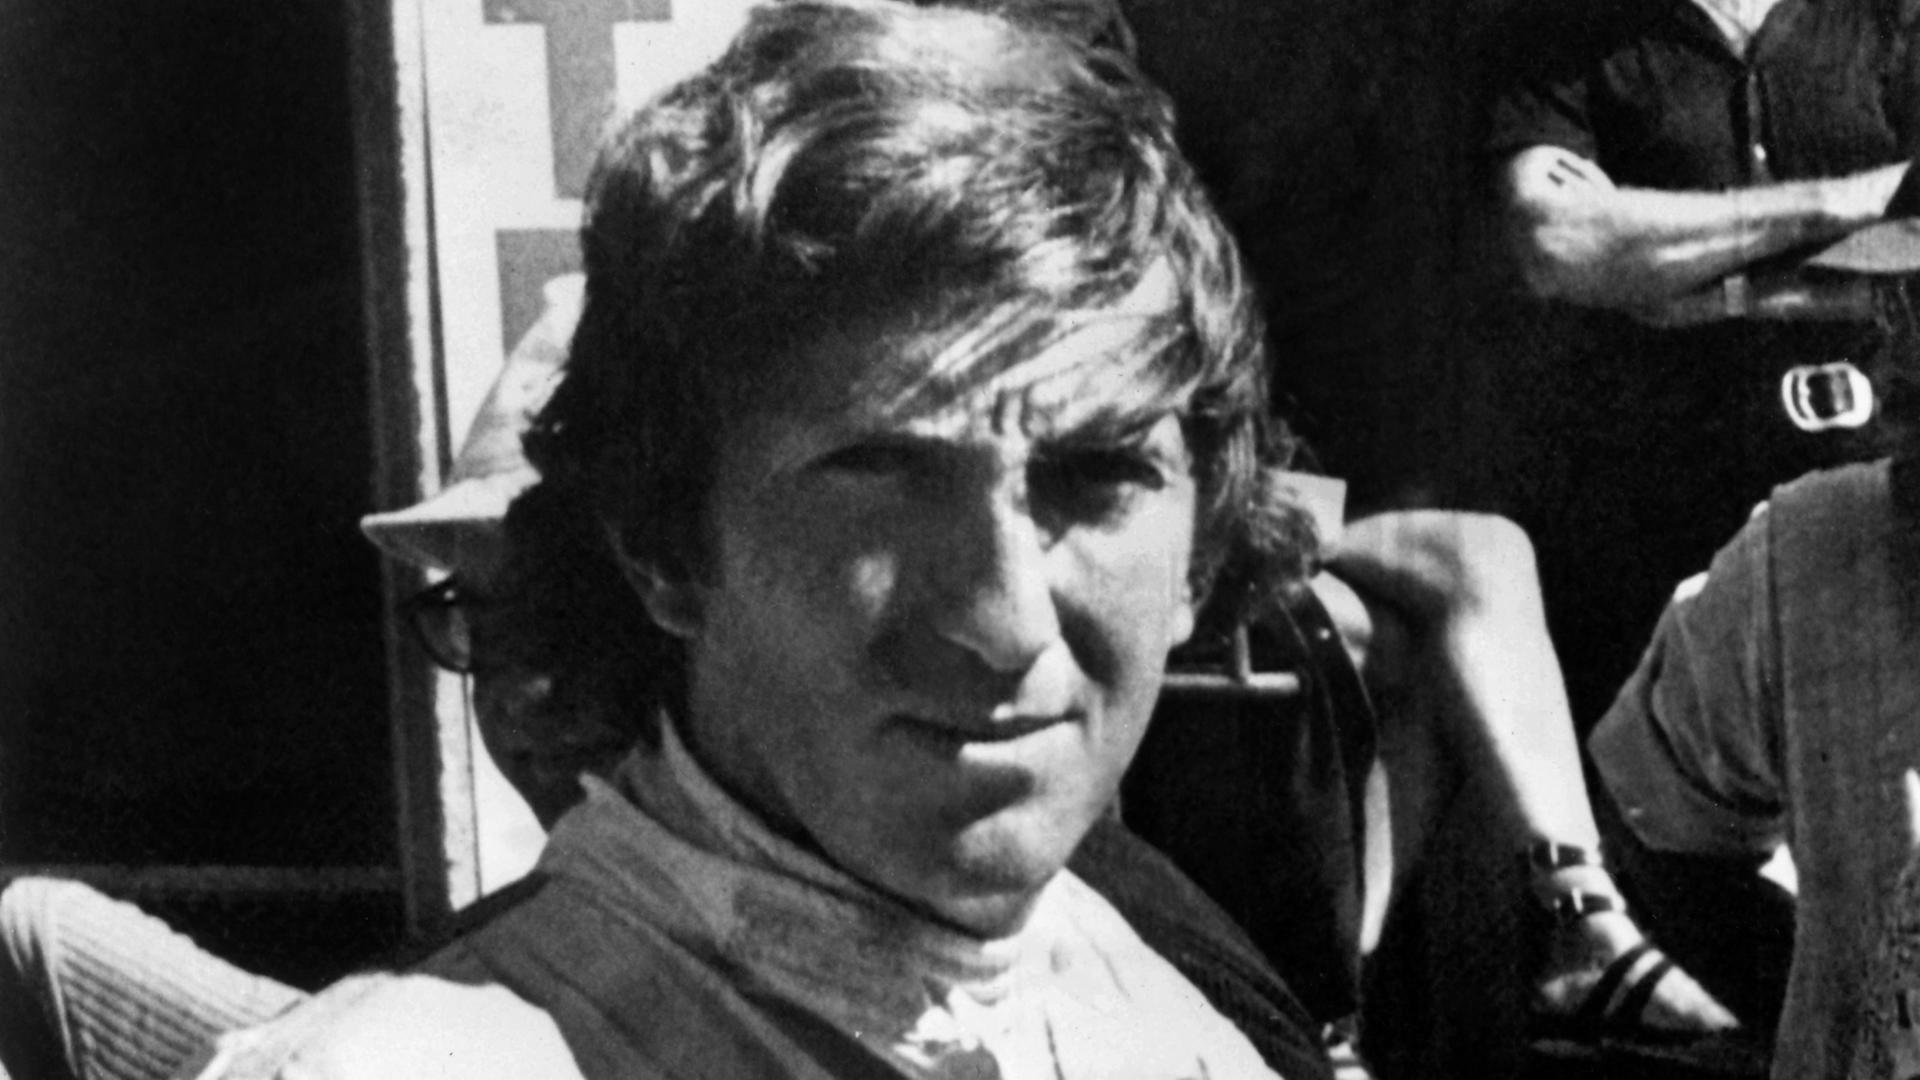 Aufnahme des Formel 1-Rennfahrers Jochen Rindt am 05.09.1970, kurz bevor er beim offiziellen Training des "41. Großen Preises von Italien" auf der Rennstrecke von Monza tödlich verunglückte.